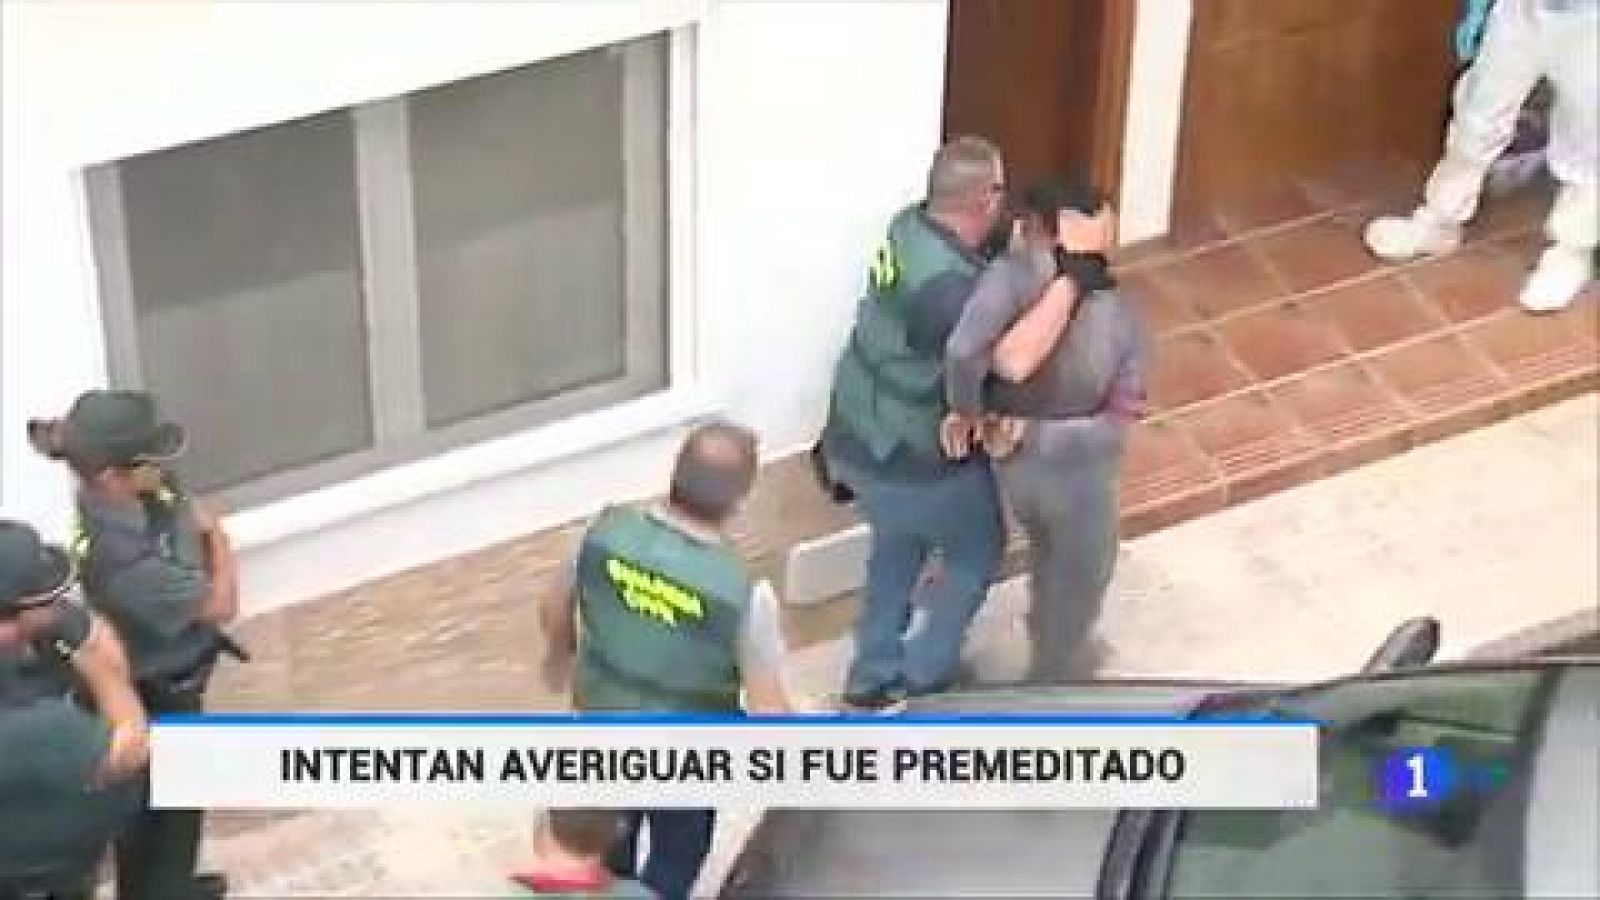 Repulsa por el asesinato de una mujer y su hijo en Adeje, Tenerife